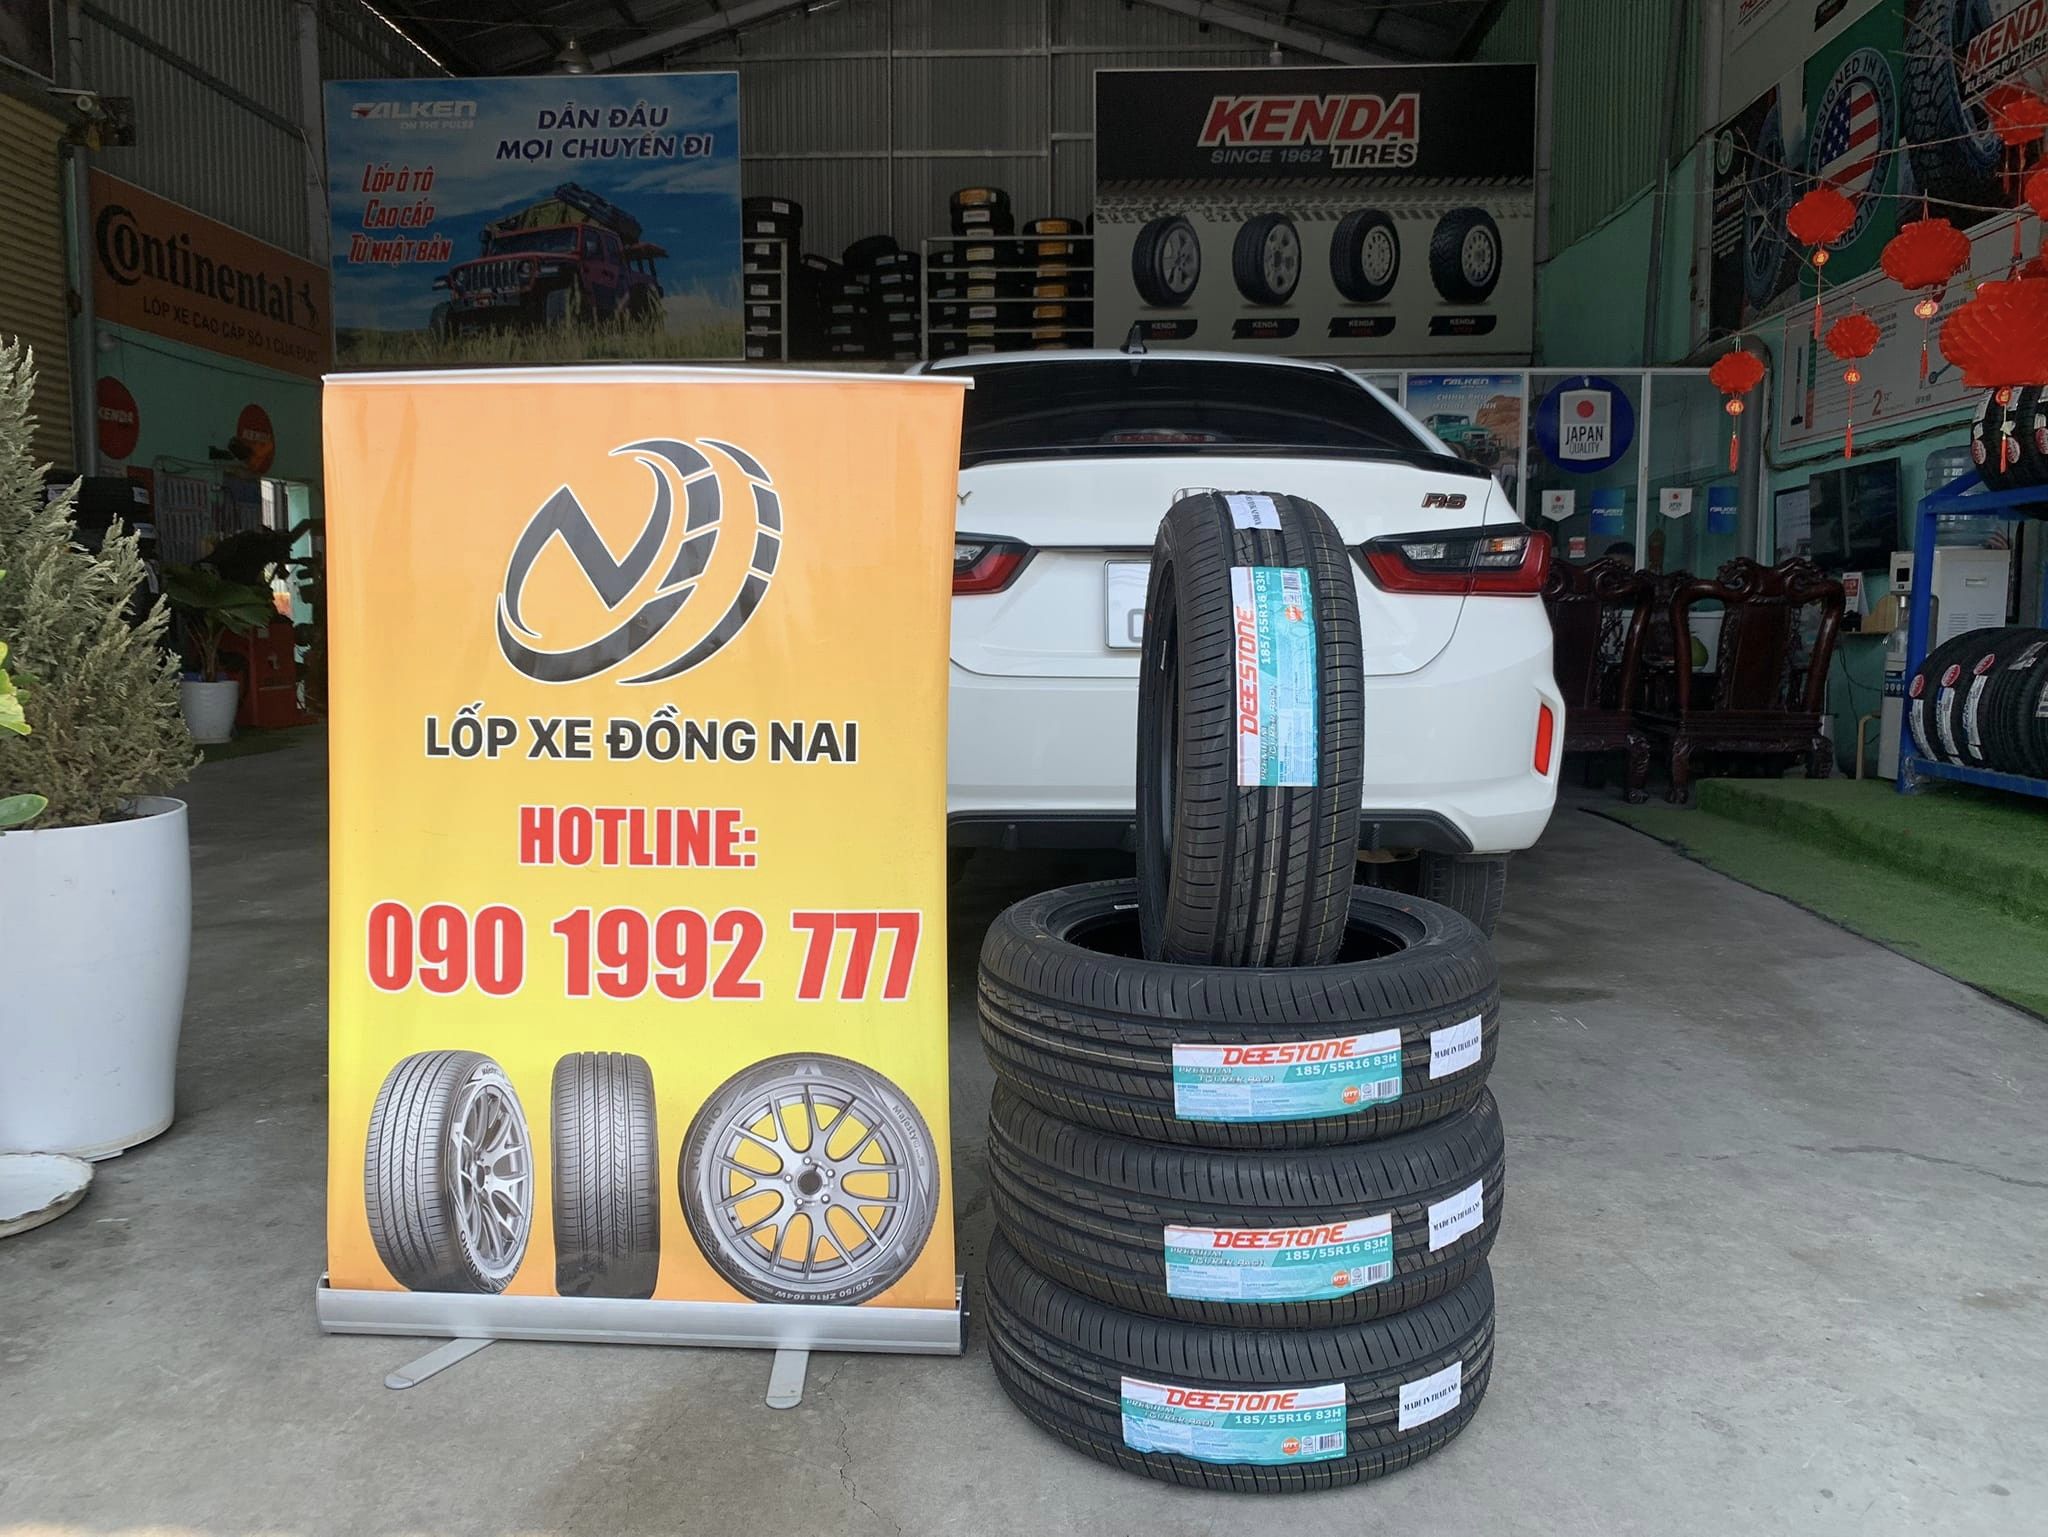 TƯ VẤN : Thay lốp xe Honda City ở Biên Hoà, Đồng Nai.